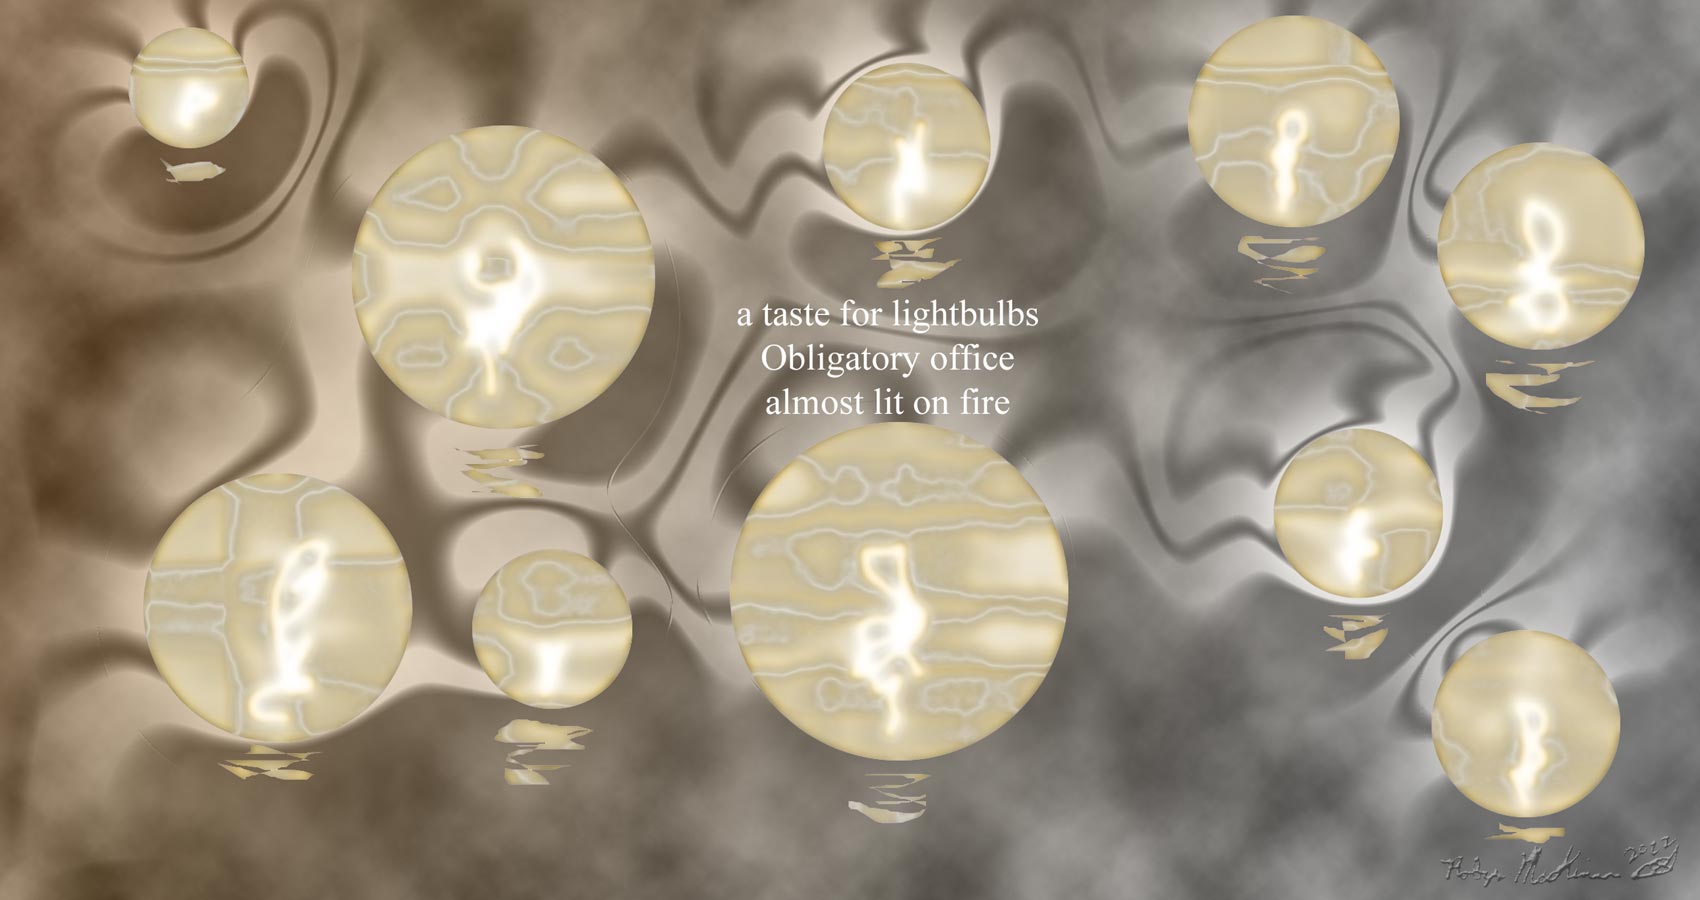 A Taste For Lightbulbs, a haiku by Robyn MacKinnon at Spillwords.com